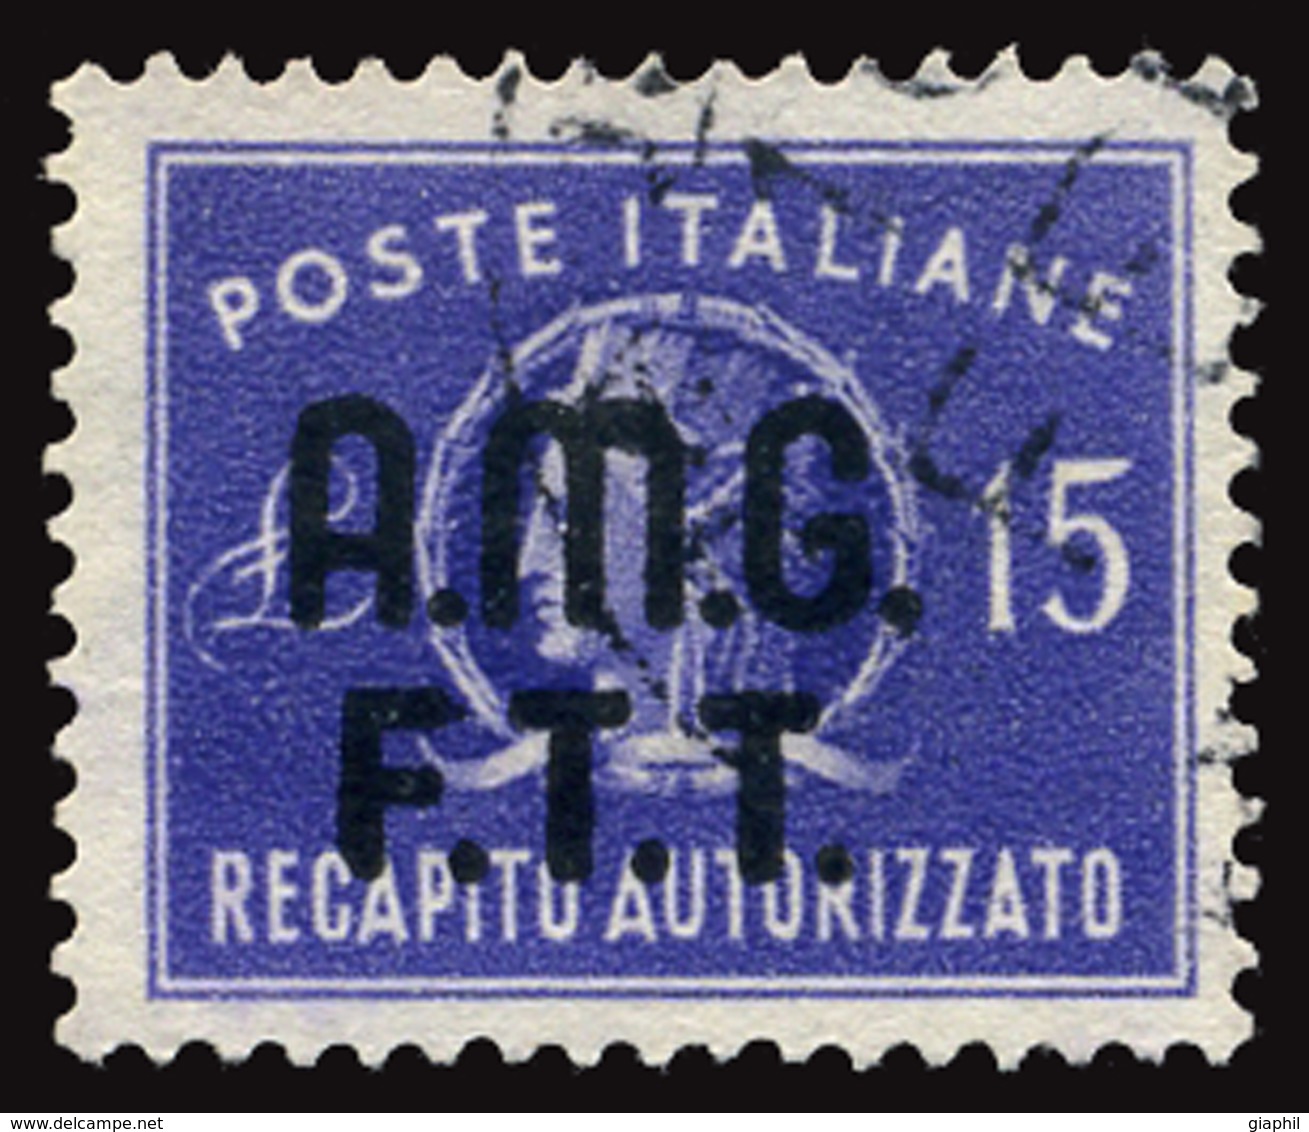 ITALY ITALIA TRIESTE A 1949 RECAPITO AUTORIZZATO 15 L. (Sass. 3) USATO OFFERTA! - Oblitérés